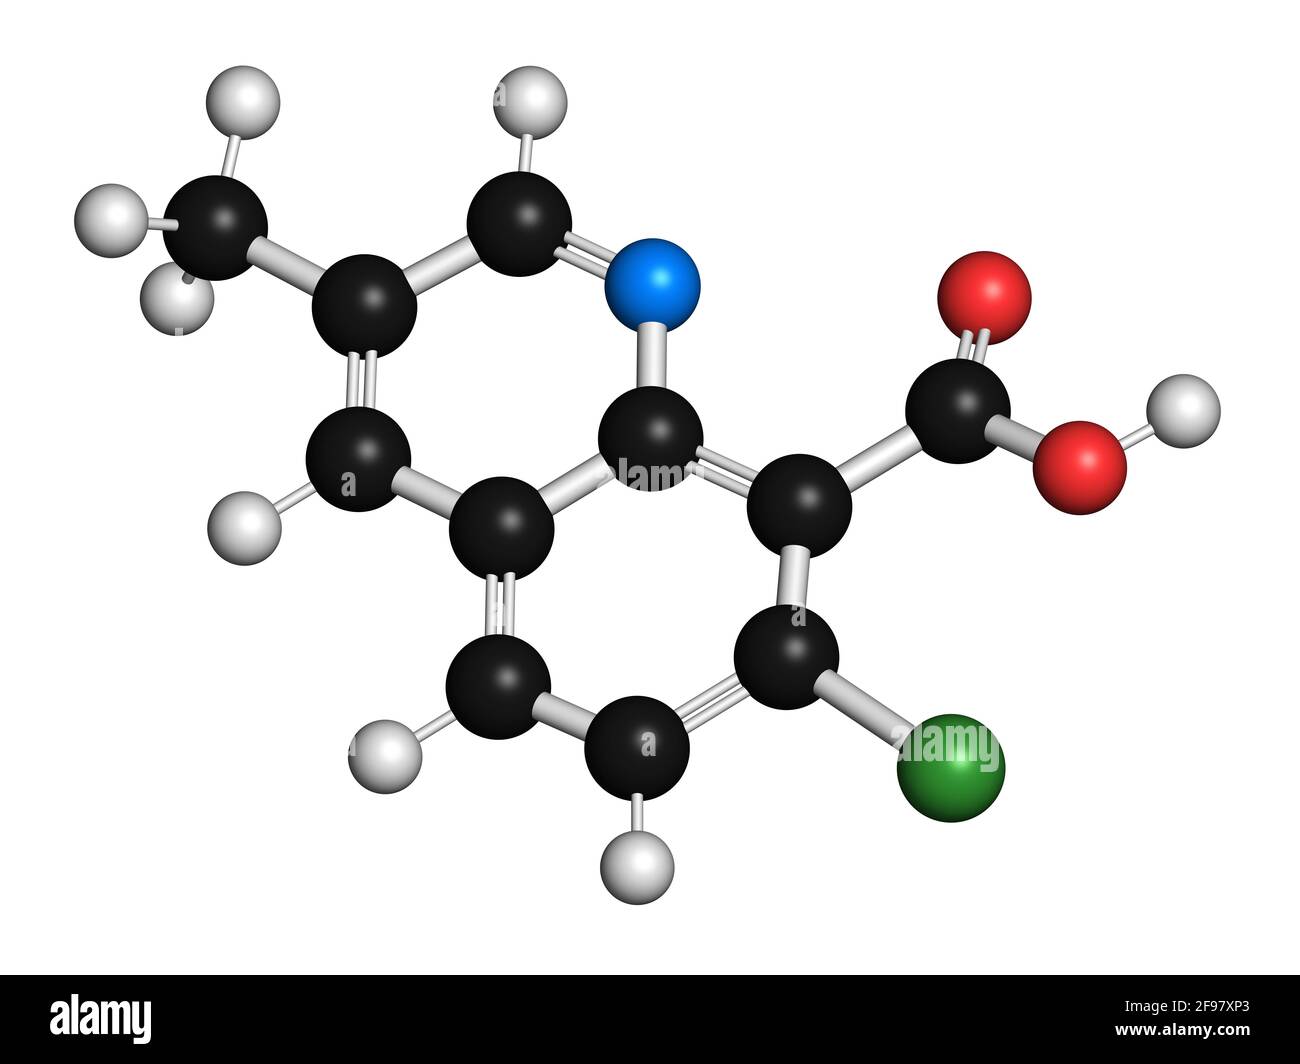 Quinmerac herbicide molecule, illustration Stock Photo